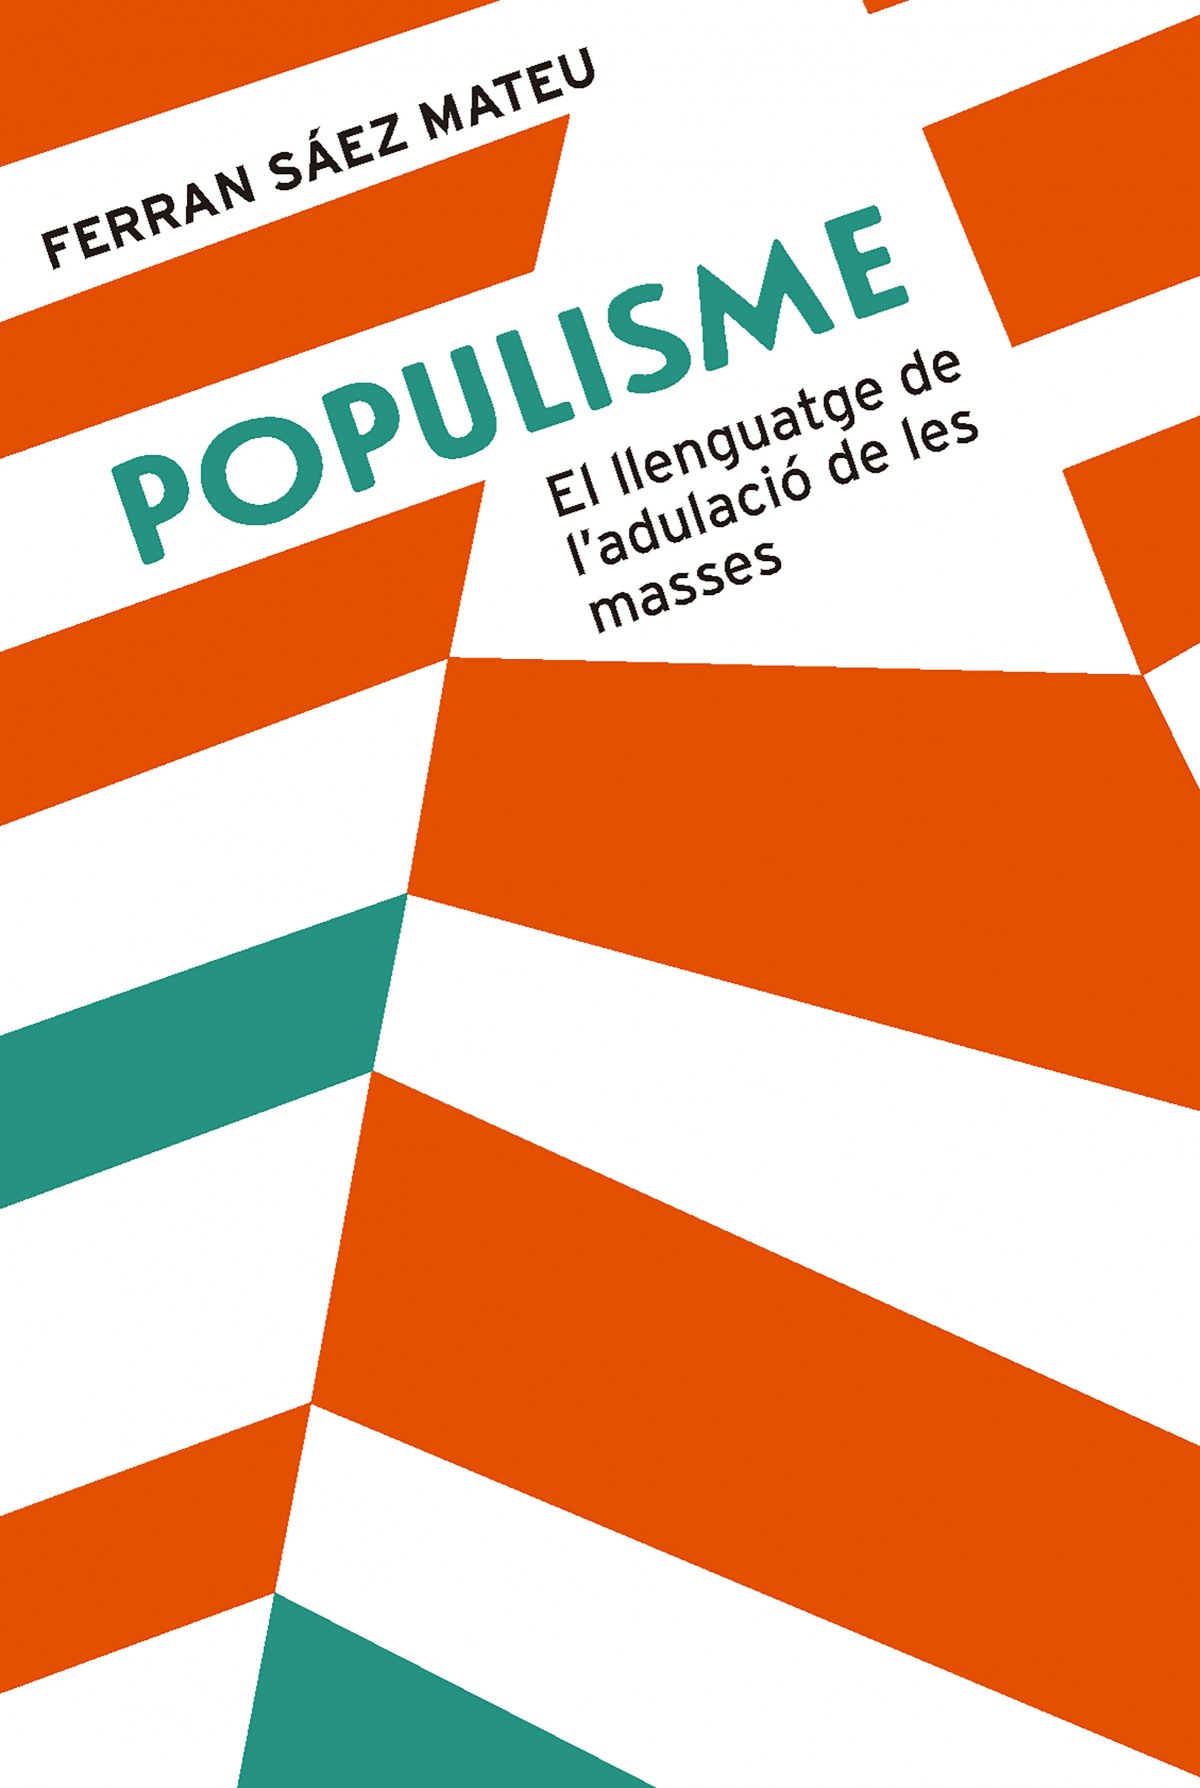 POPULISME El llenguatge de l'adulació de les masses - Sáez Mateu, Ferran